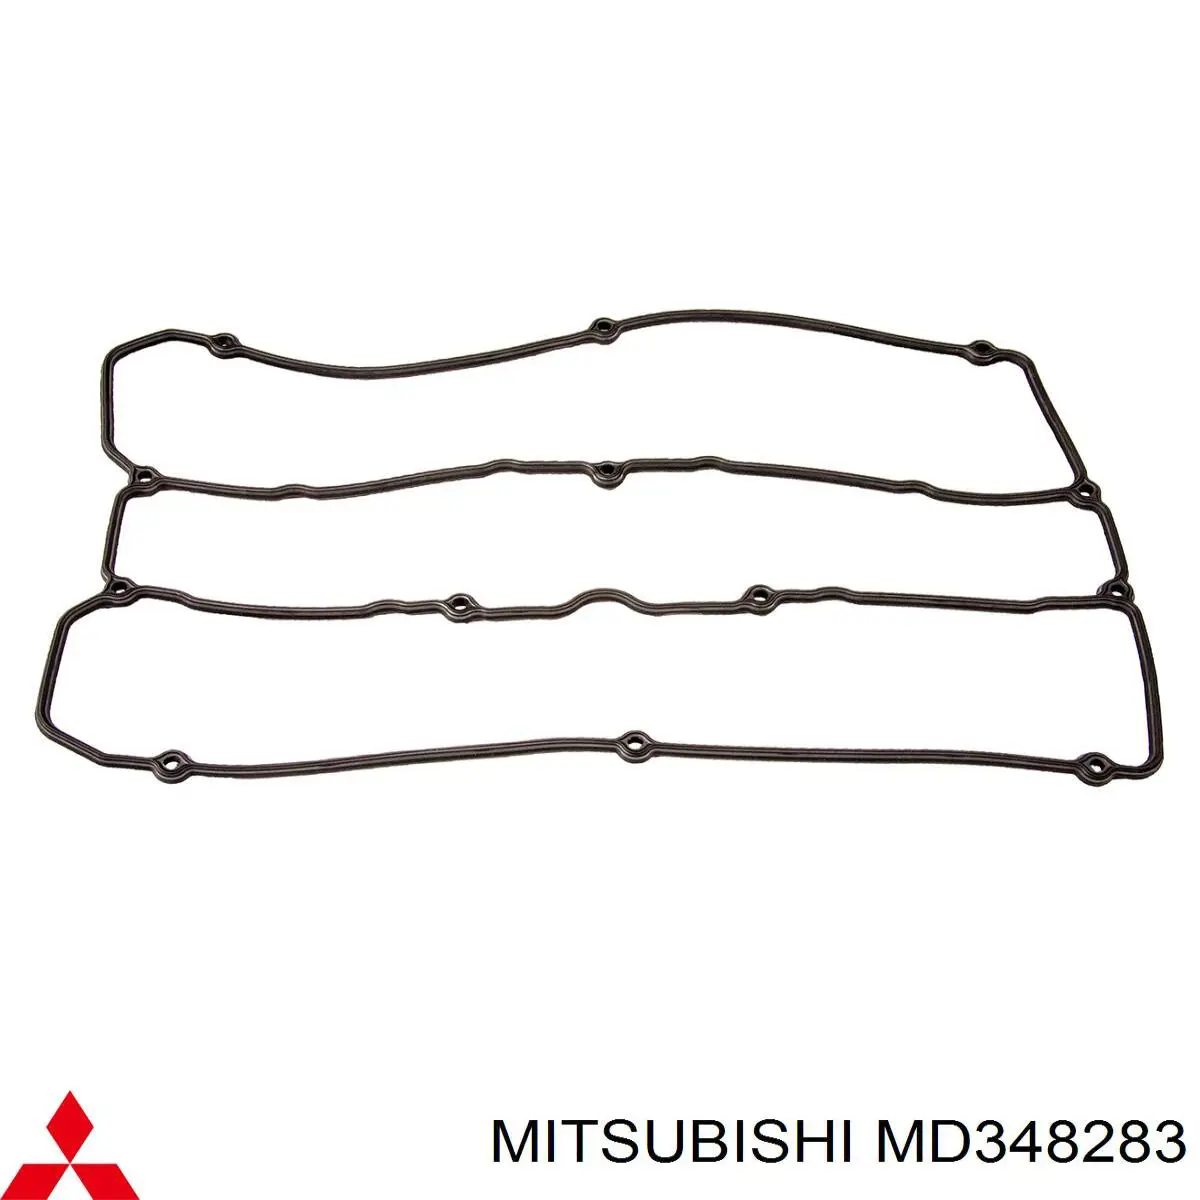 MD348283 Mitsubishi junta tapa de balancines